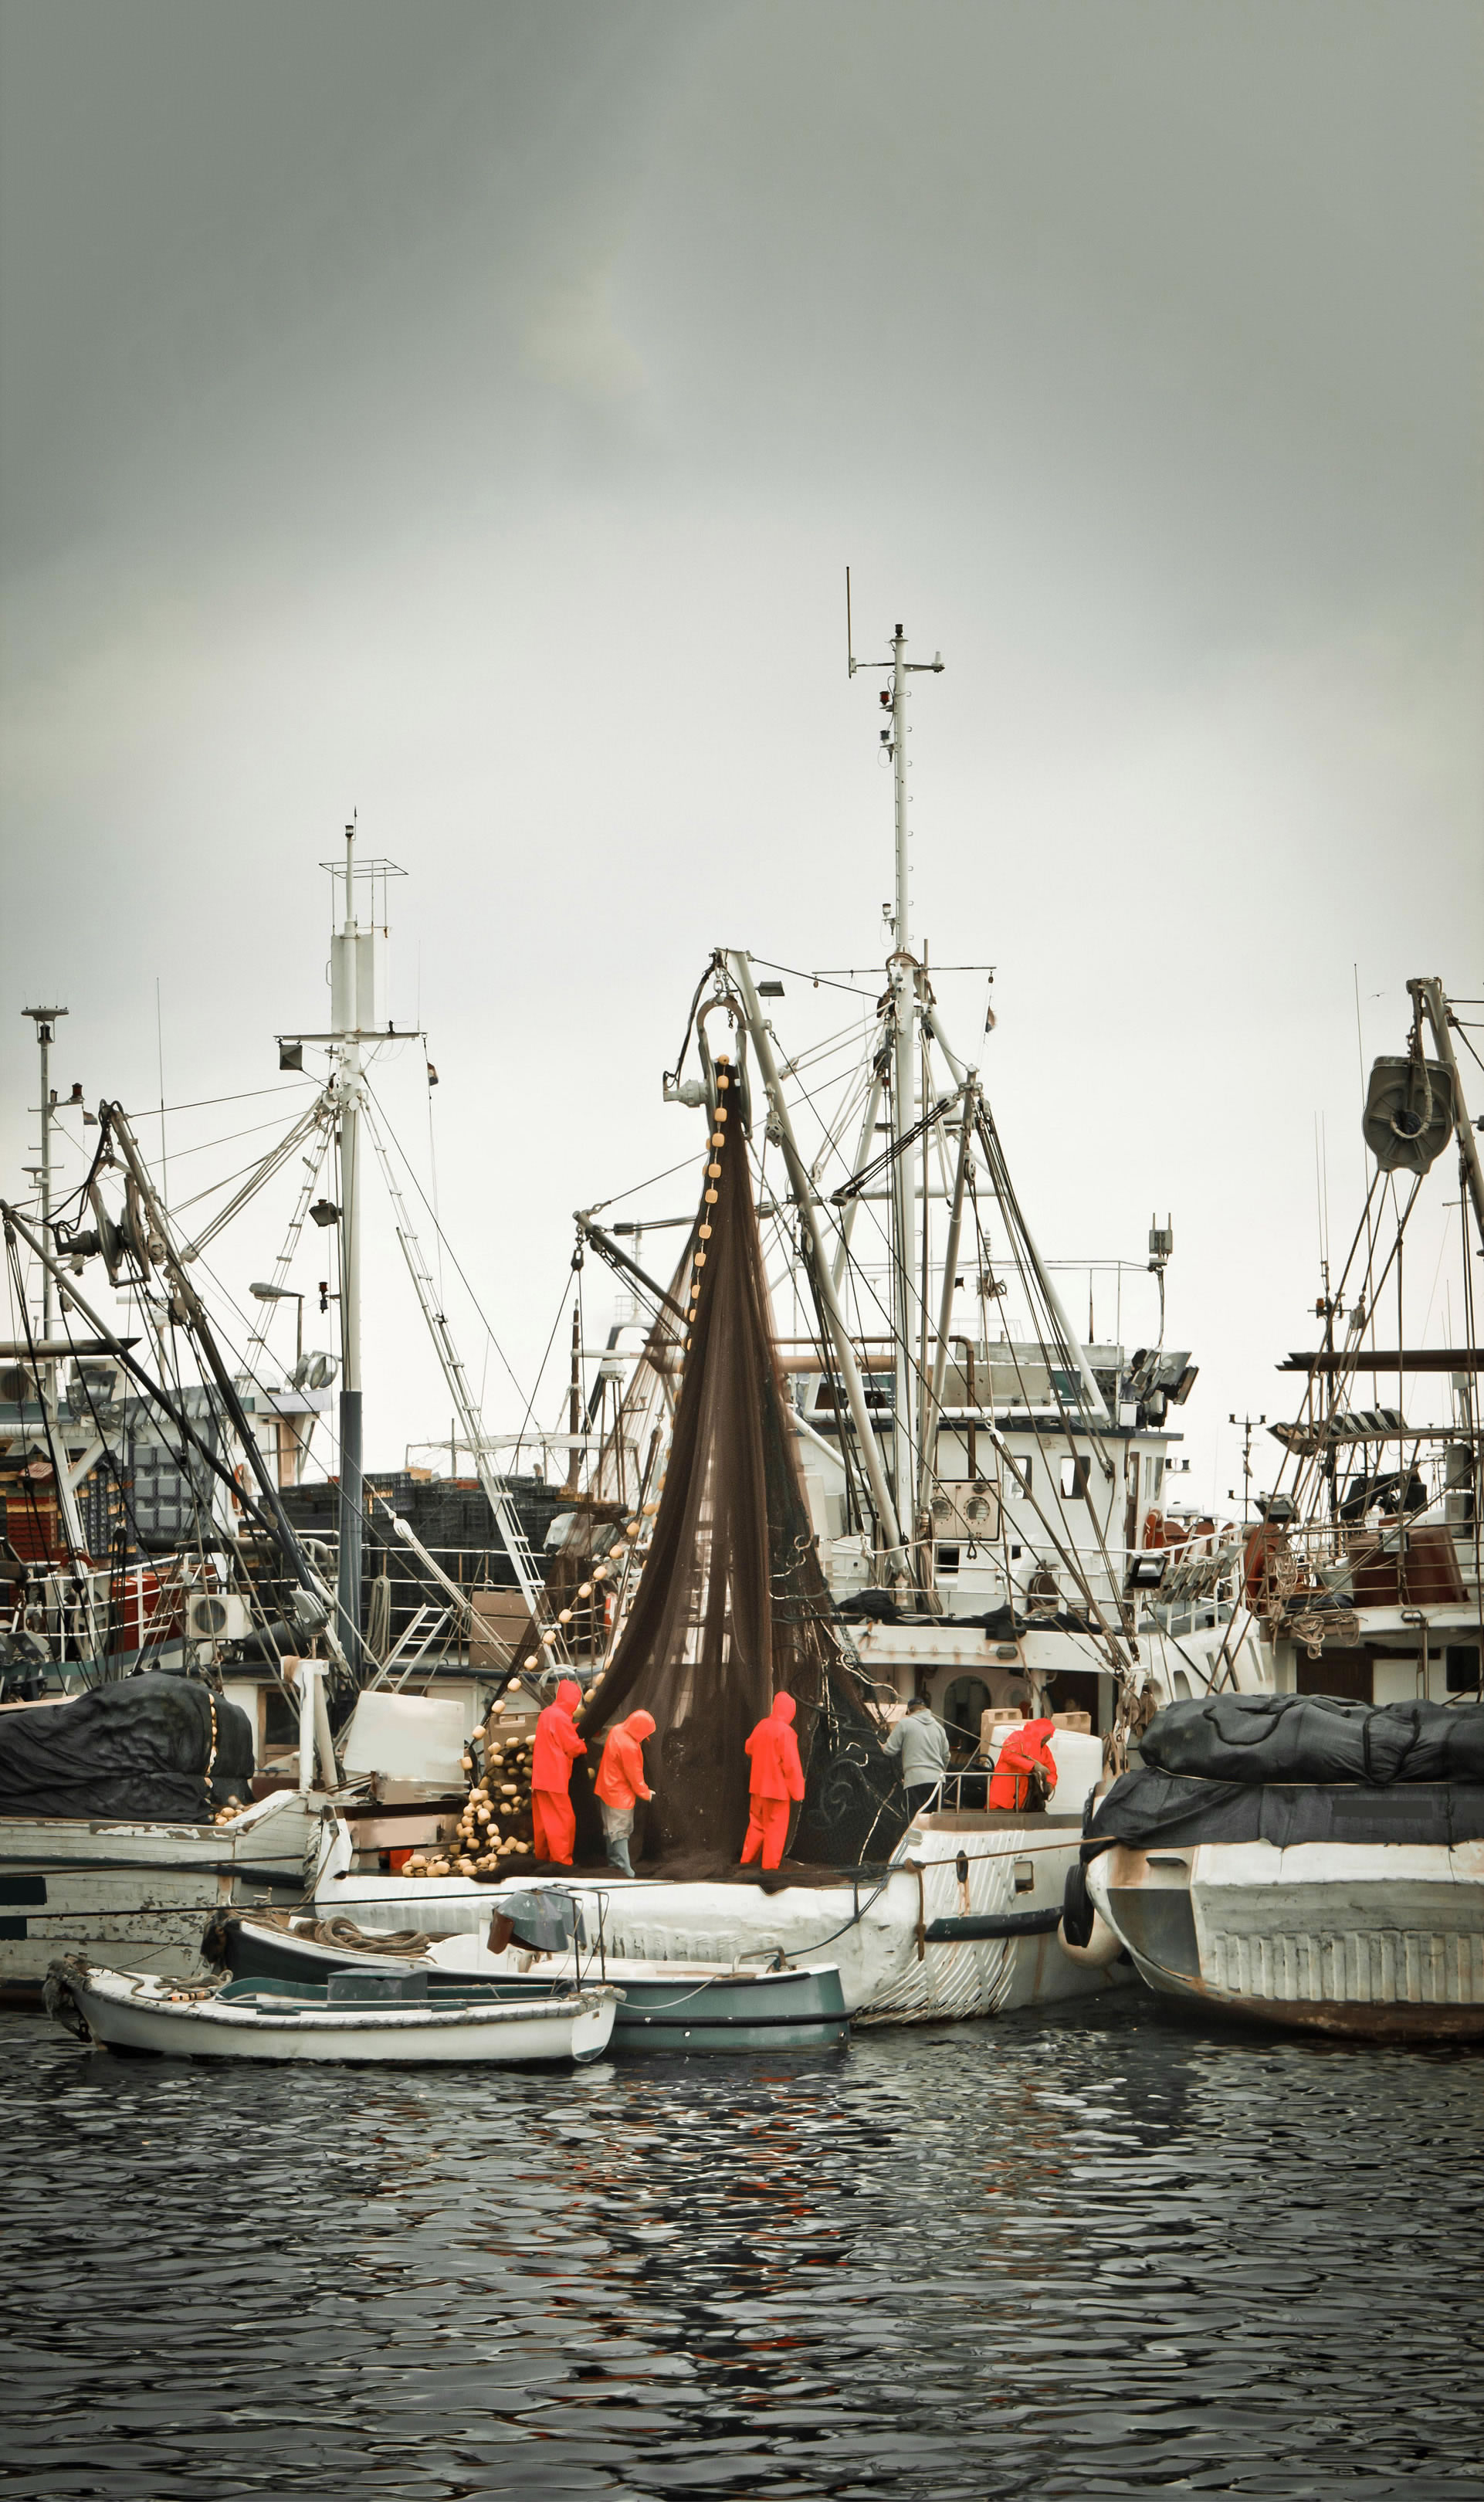 Рибари в непромокаеми работни дрехи държат риболовна мрежа на траулер, акостирал сред множество други кораби в риболовно пристанище.